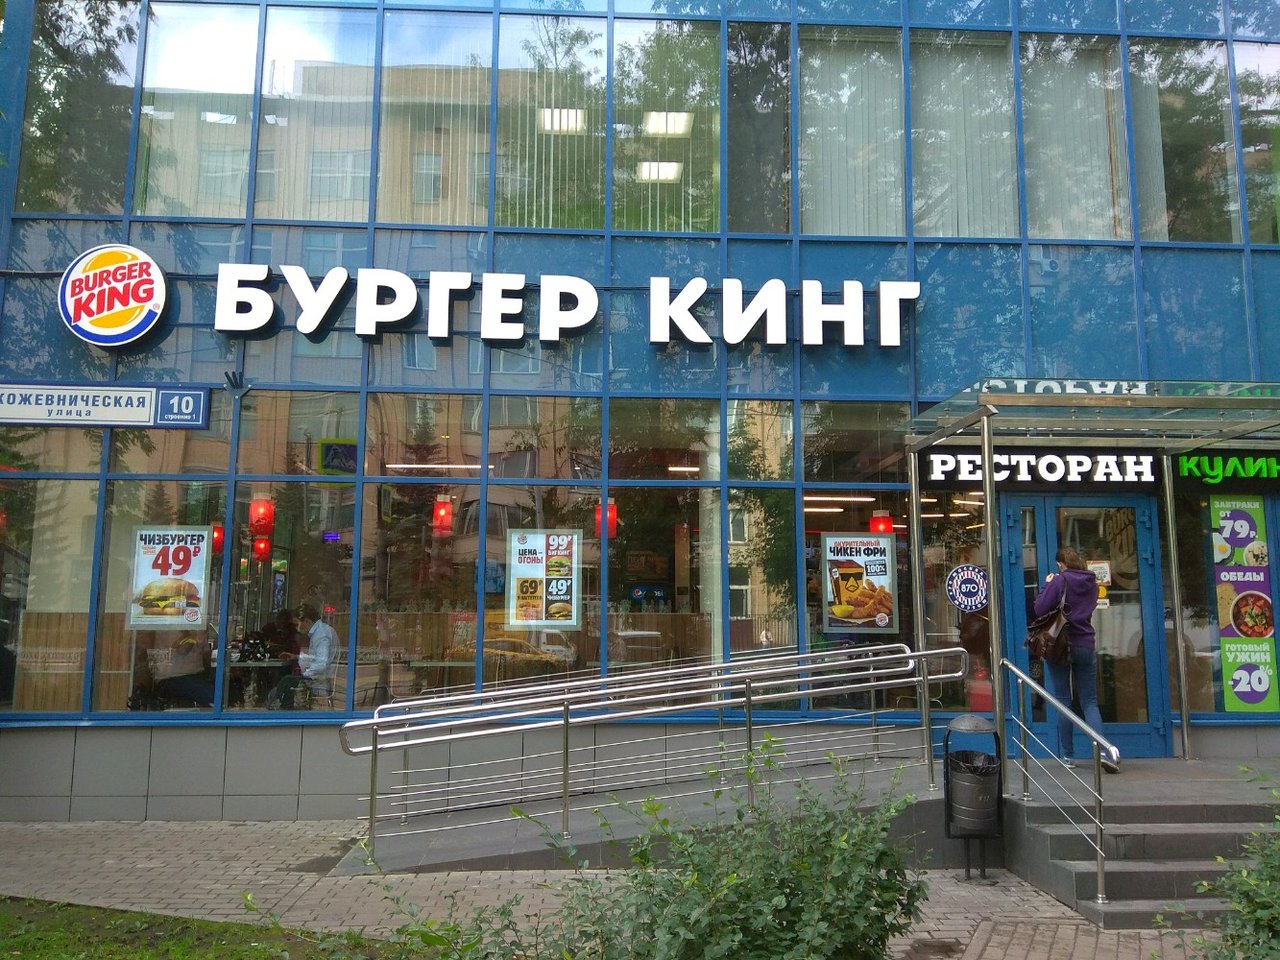 "Бургер кинг" на улице Кожевнической, 10. Владелец помещения подал против сети банкротный иск. Фото © "Яндекс.Карты"